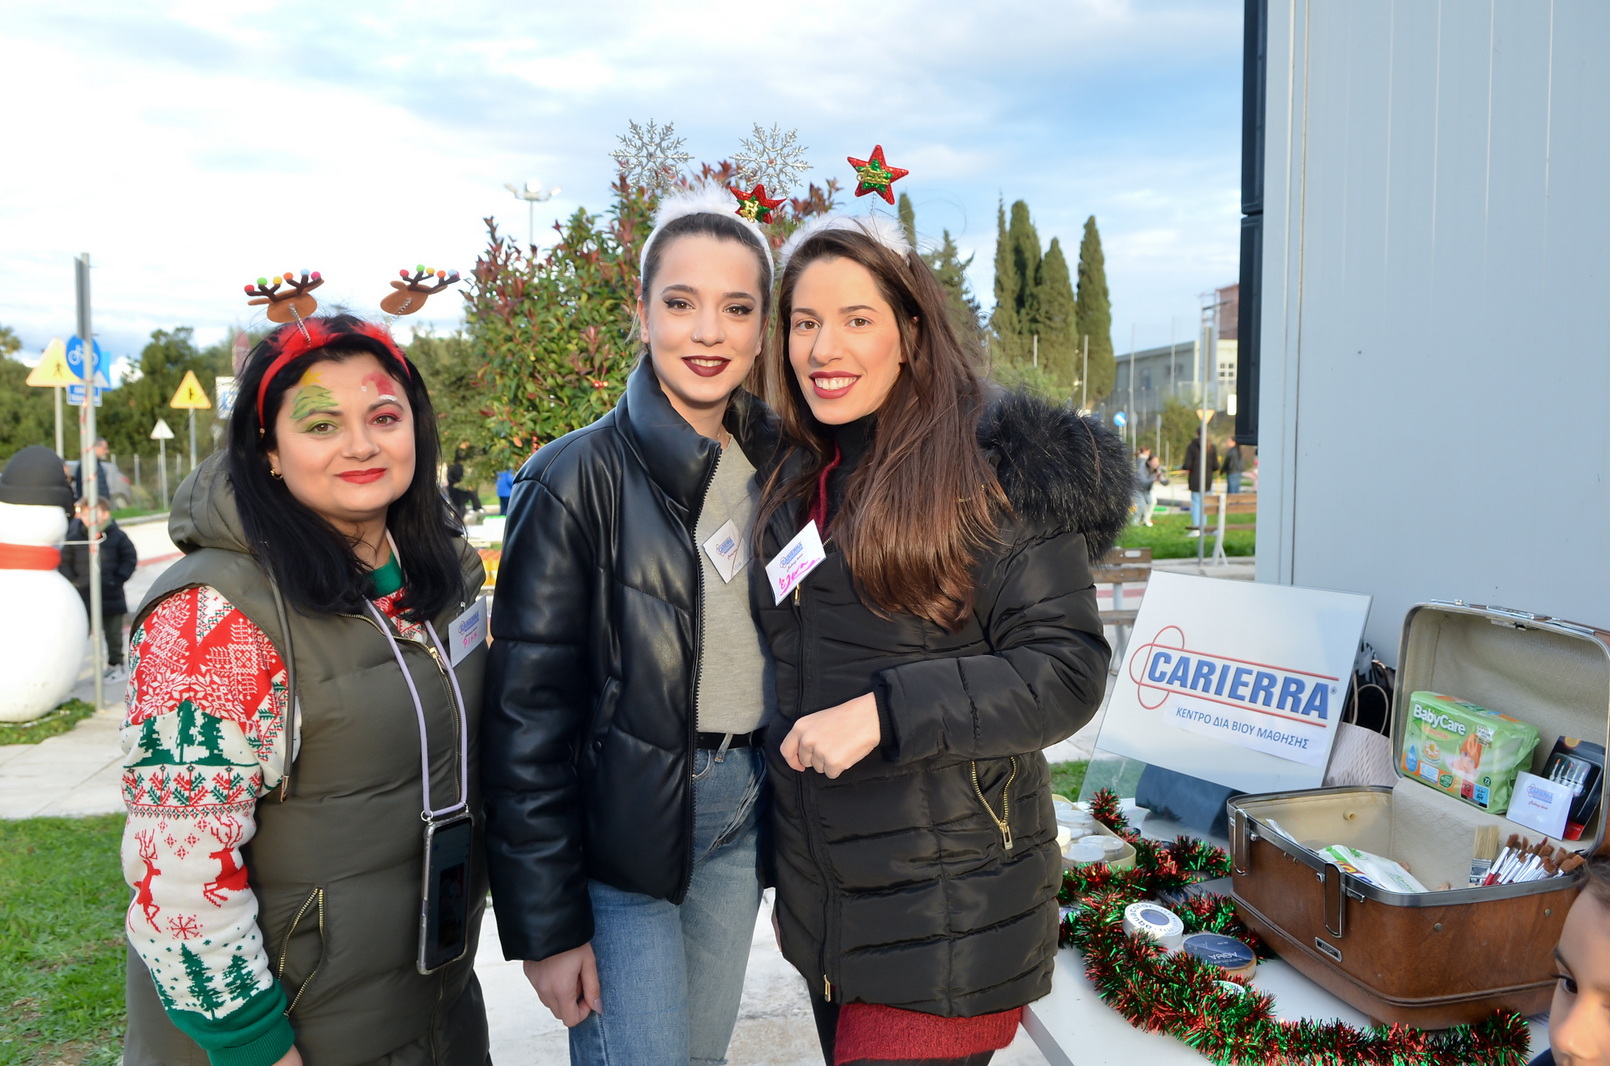 Πάτρα: Με μεγάλη επιτυχία το Χριστουγεννιάτικο διήμερο Παιδικό Φεστιβάλ στην Κανελλοπούλου - ΦΩΤΟ